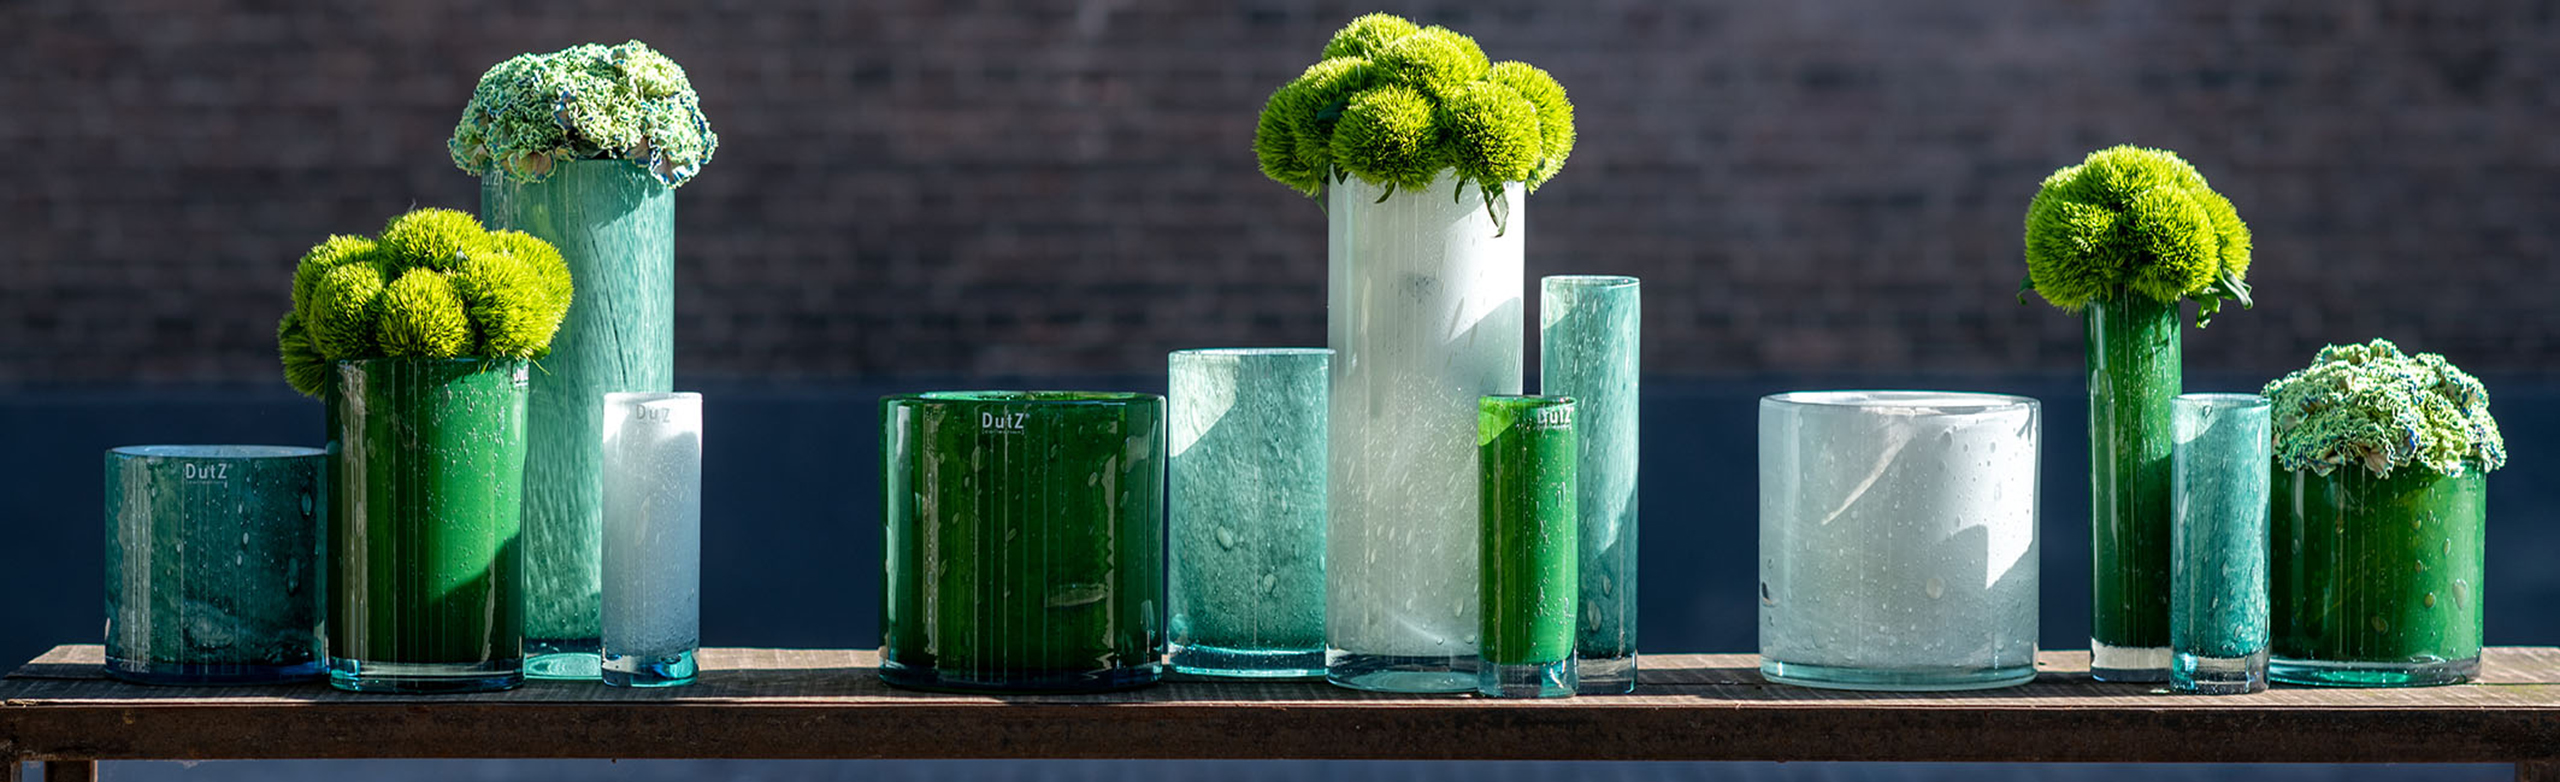 DutZ gerecyclede vazen in groen en wittinten in een rij op een buitentafel. De vazen varieren in formaat en enekel zijn gevuld met bloemen